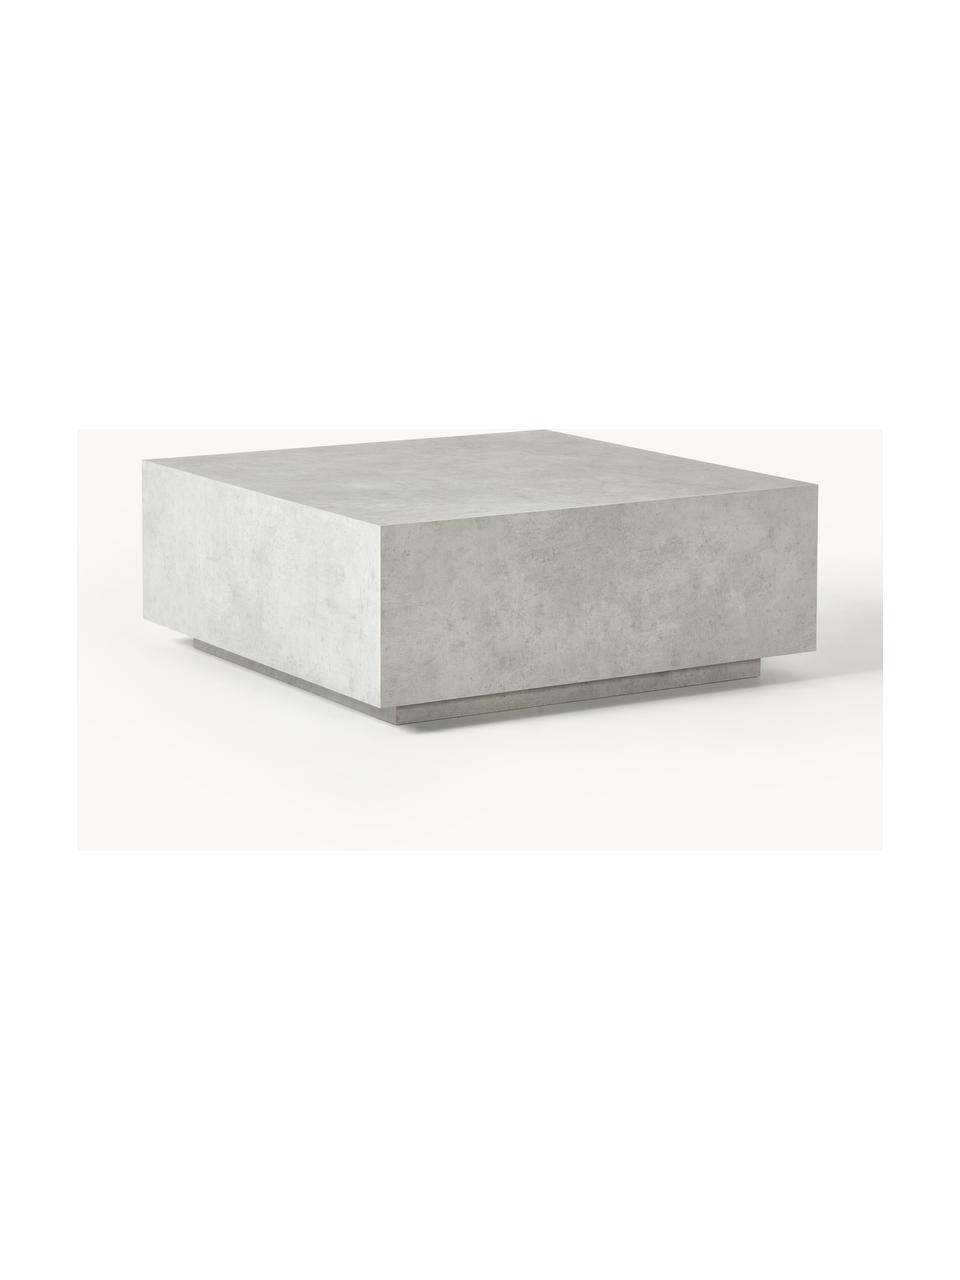 Konferenční stolek v betonovém vzhledu Lesley, MDF deska (dřevovláknitá deska střední hustoty) pokrytá melaminovou fólií, mangové dřevo, Šedý betonový vzhled, matný, Š 90 cm, H 90 cm